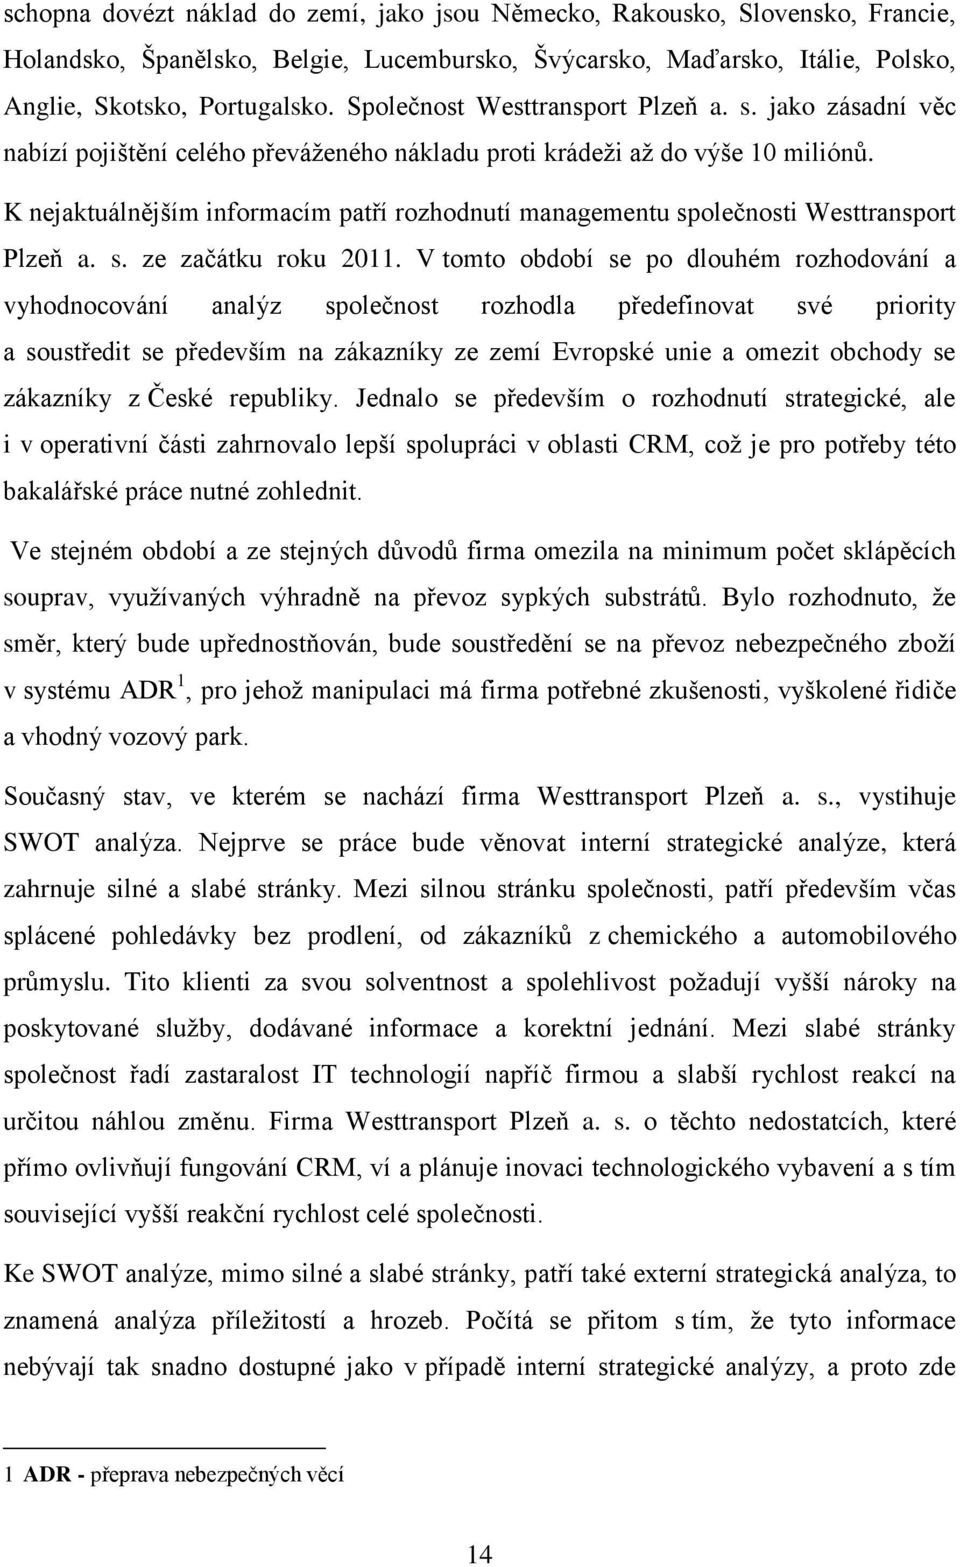 K nejaktuálnějším informacím patří rozhodnutí managementu společnosti Westtransport Plzeň a. s. ze začátku roku 2011.